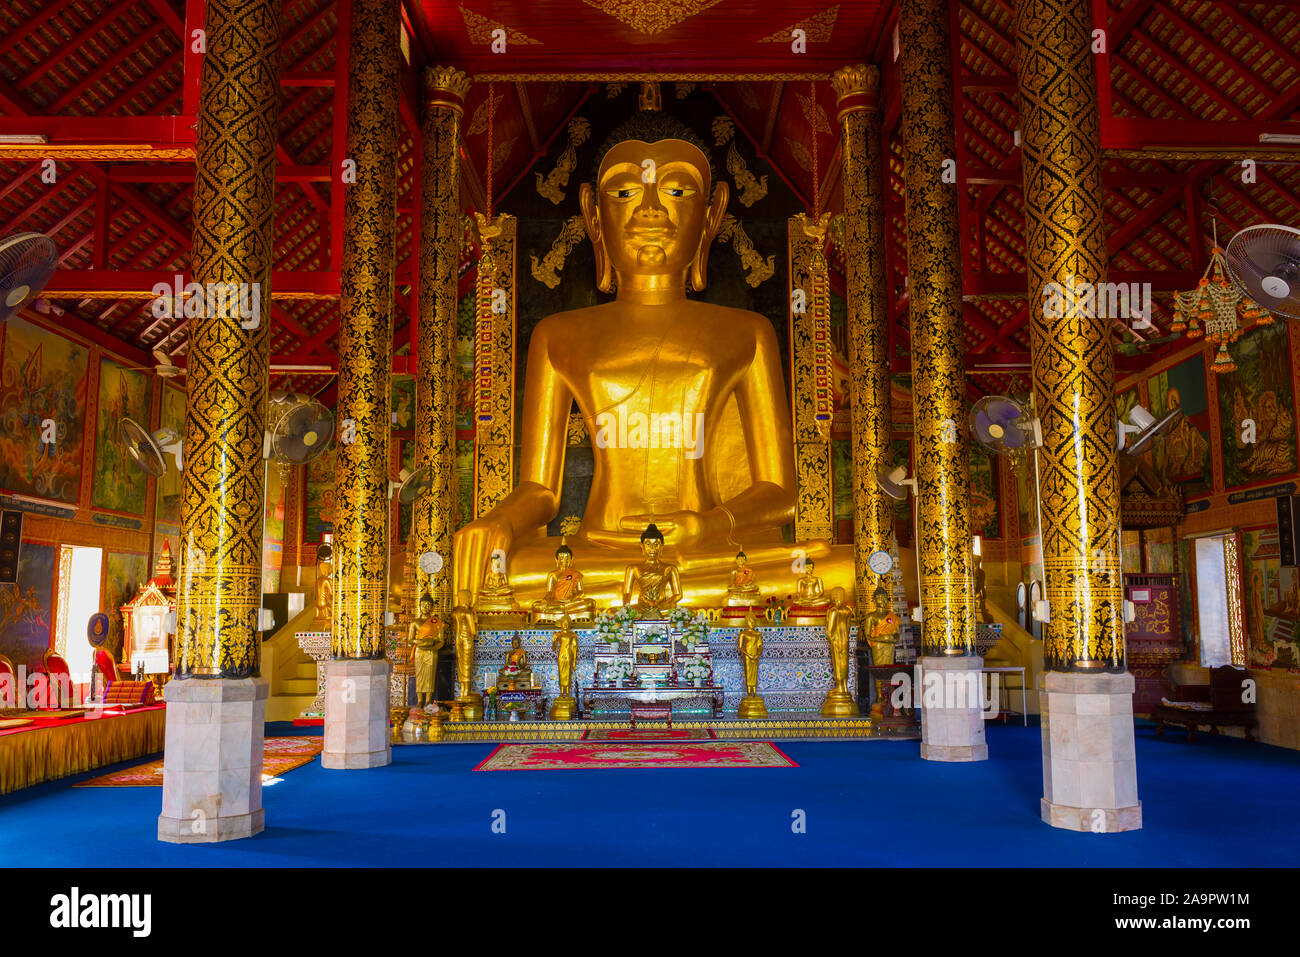 CHIANG RAI, THAILAND - Dezember 17, 2018: Blick auf einen riesigen Buddha Skulptur in der wiharn des buddhistischen Tempel Wat Jedyod Stockfoto